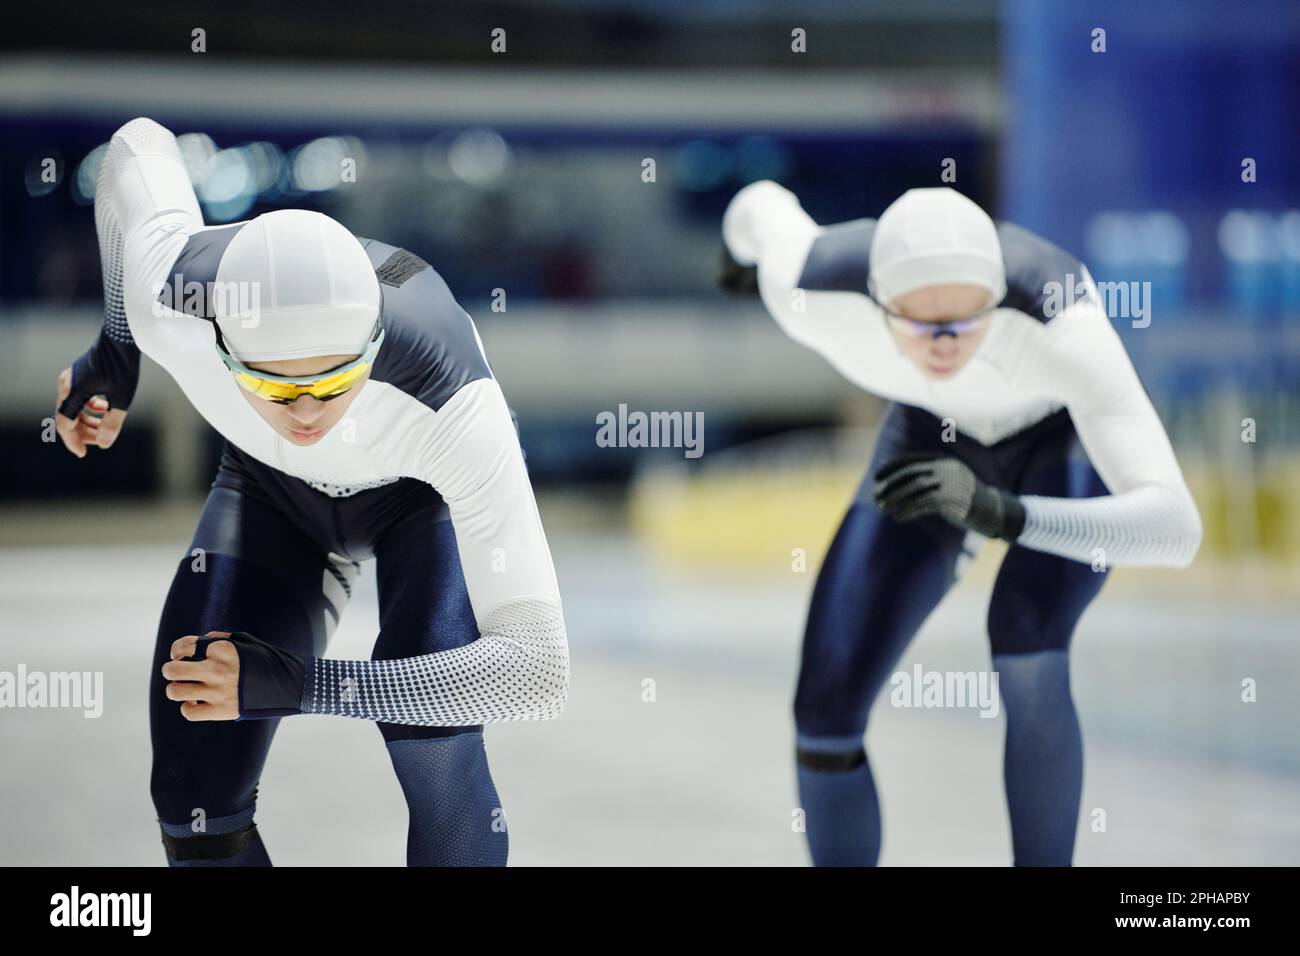 Zwei junge männliche Eiskunstläufer in Sportuniform, die sich auf der Eislaufbahn vorwärts bewegen, während sie an einem Kurzstreckenlauf-Turnier teilnehmen Stockfoto